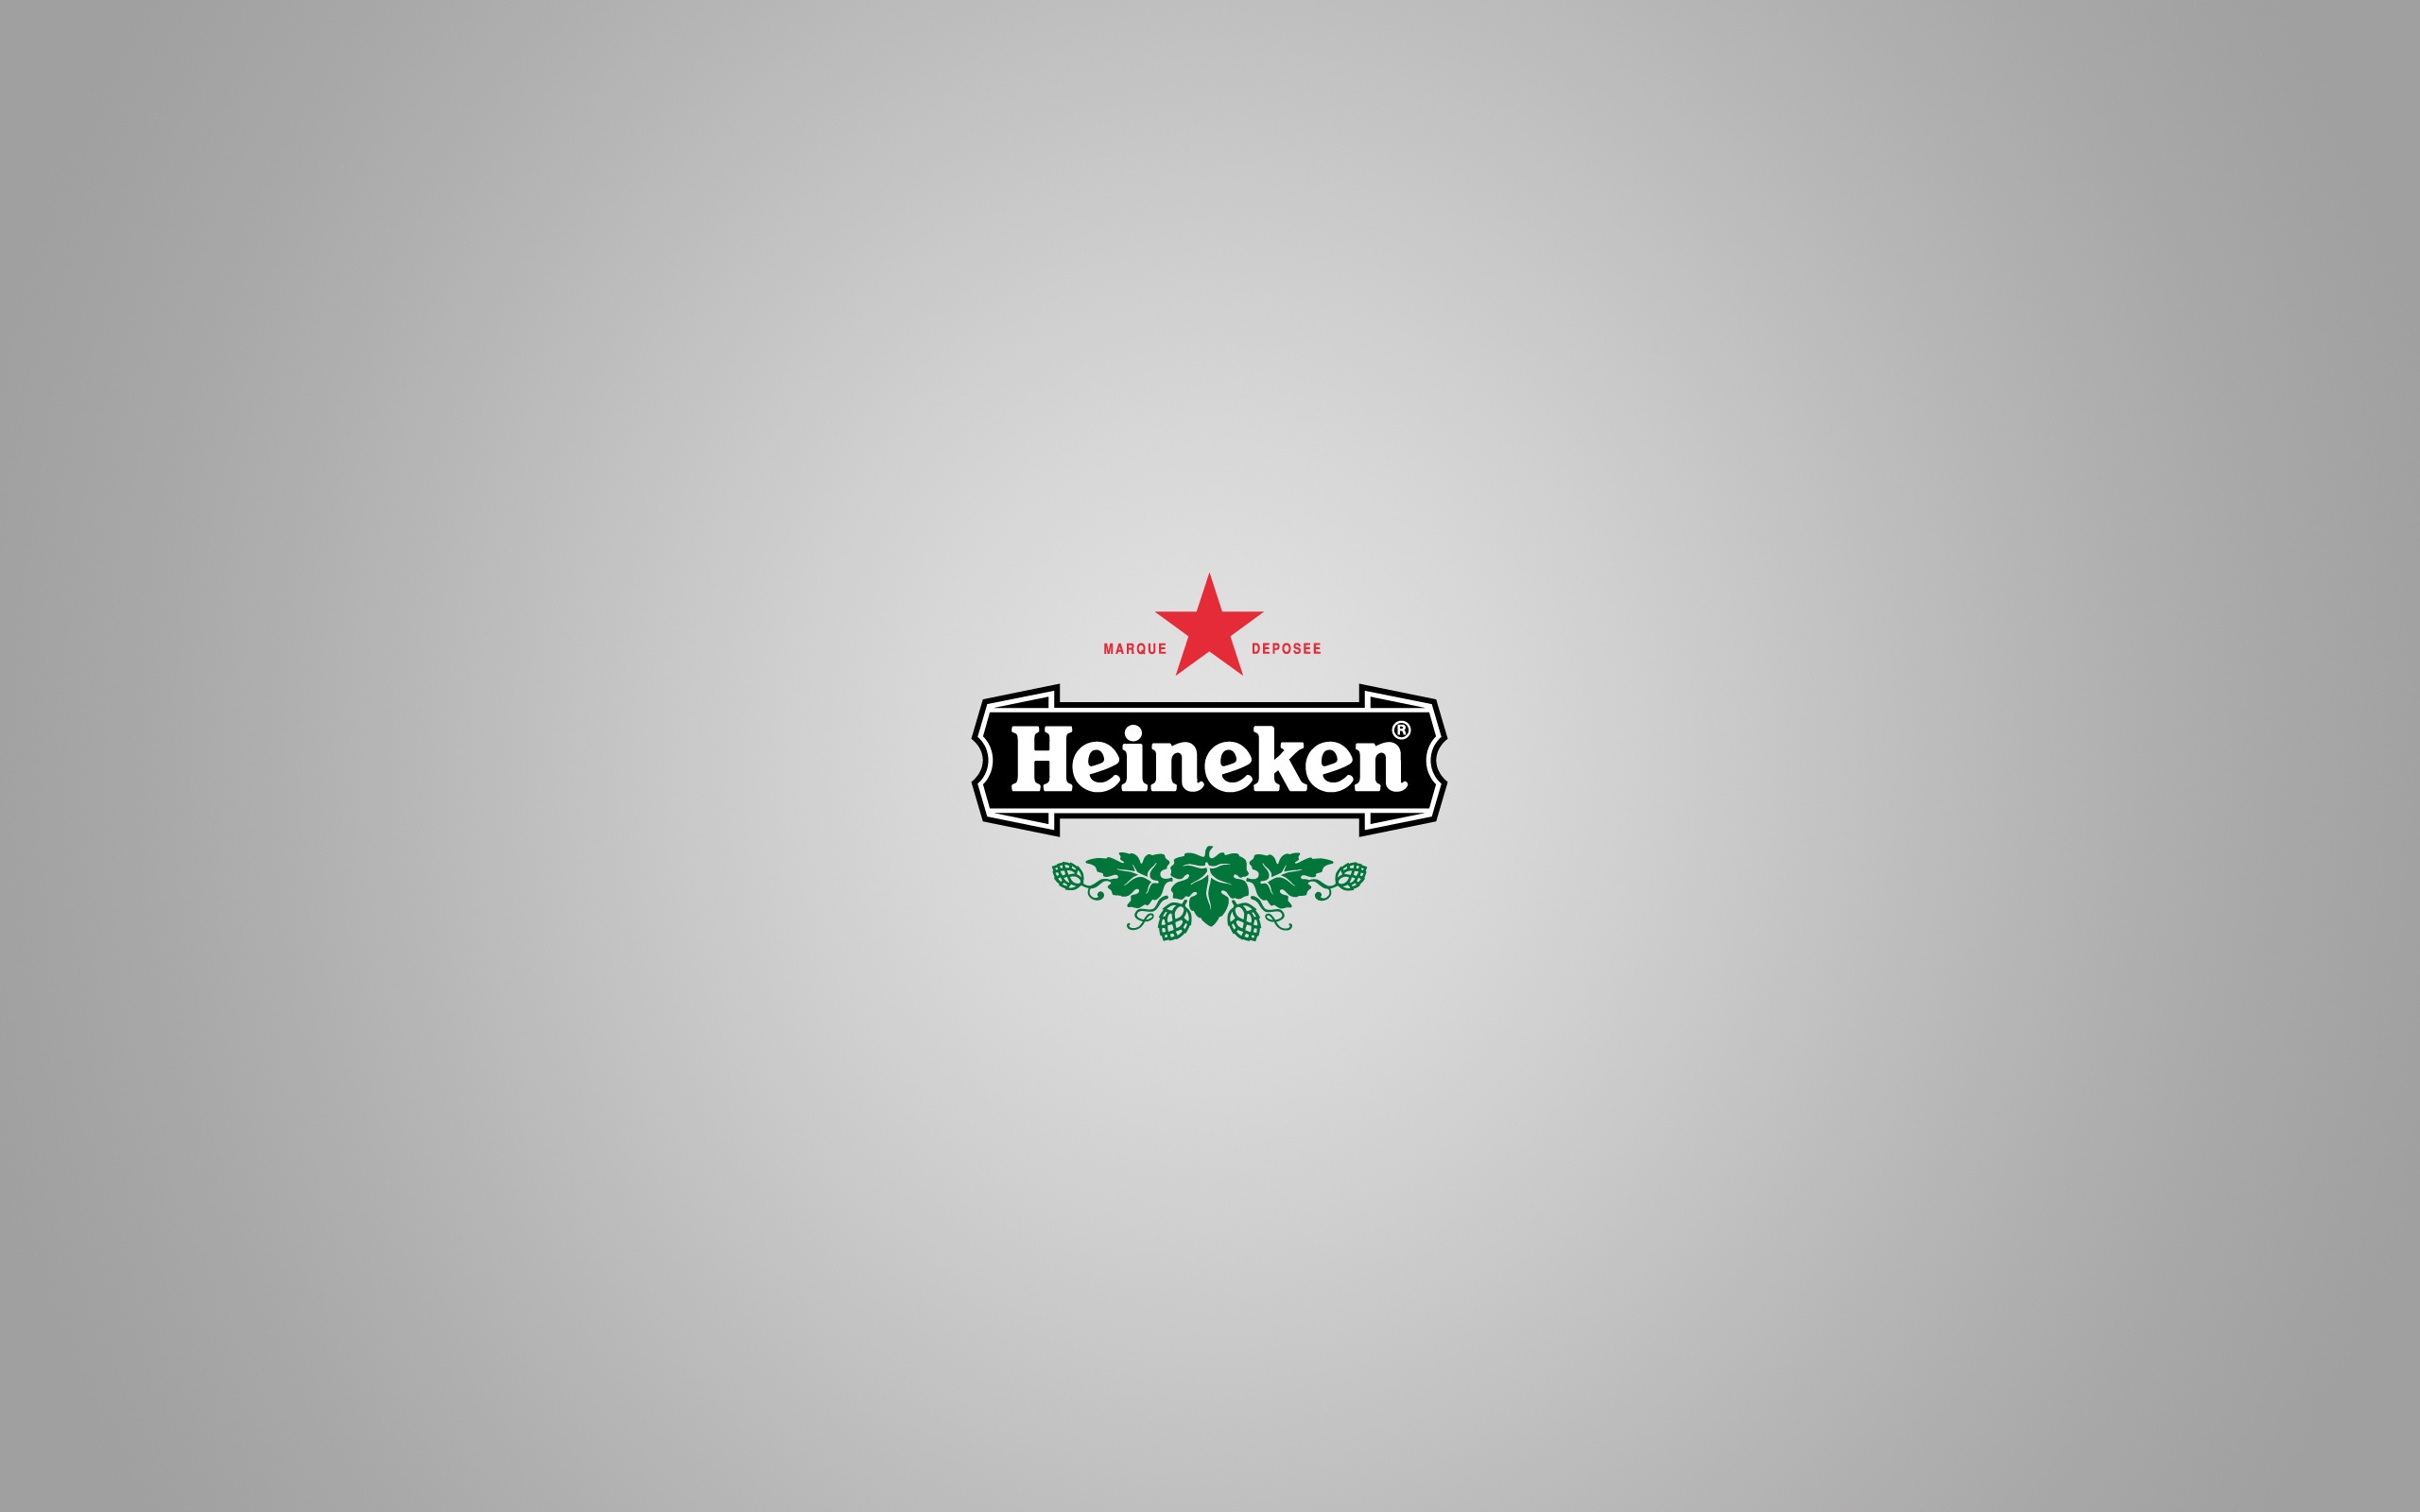 Бесплатное фото Логотип Heineken